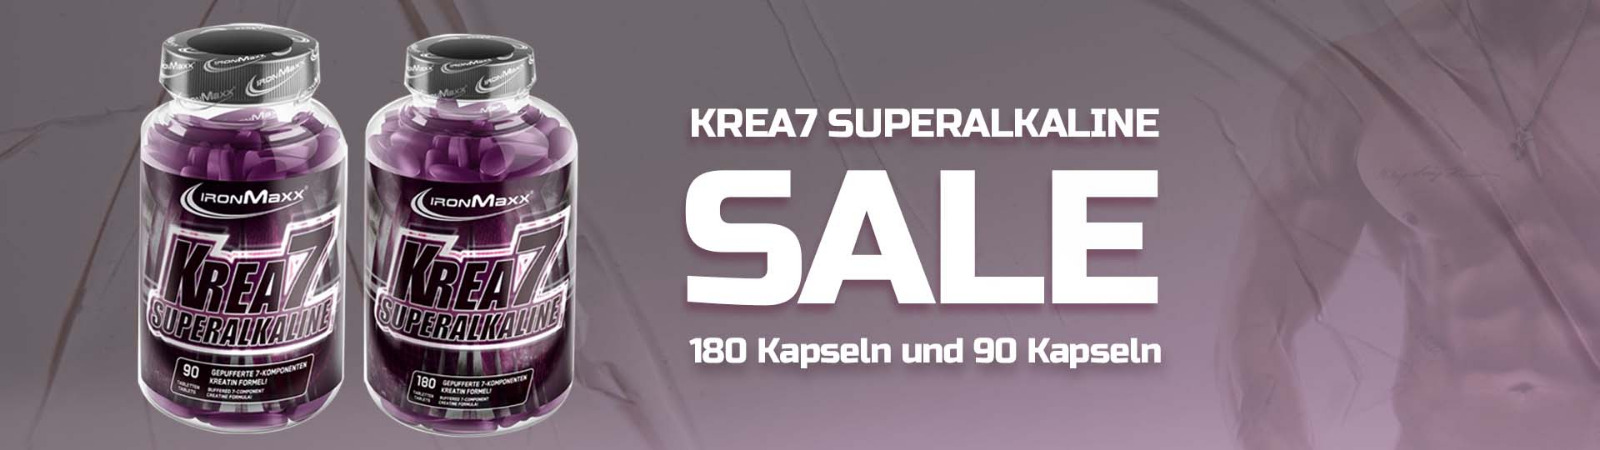 Krea7 90er /180er Sale